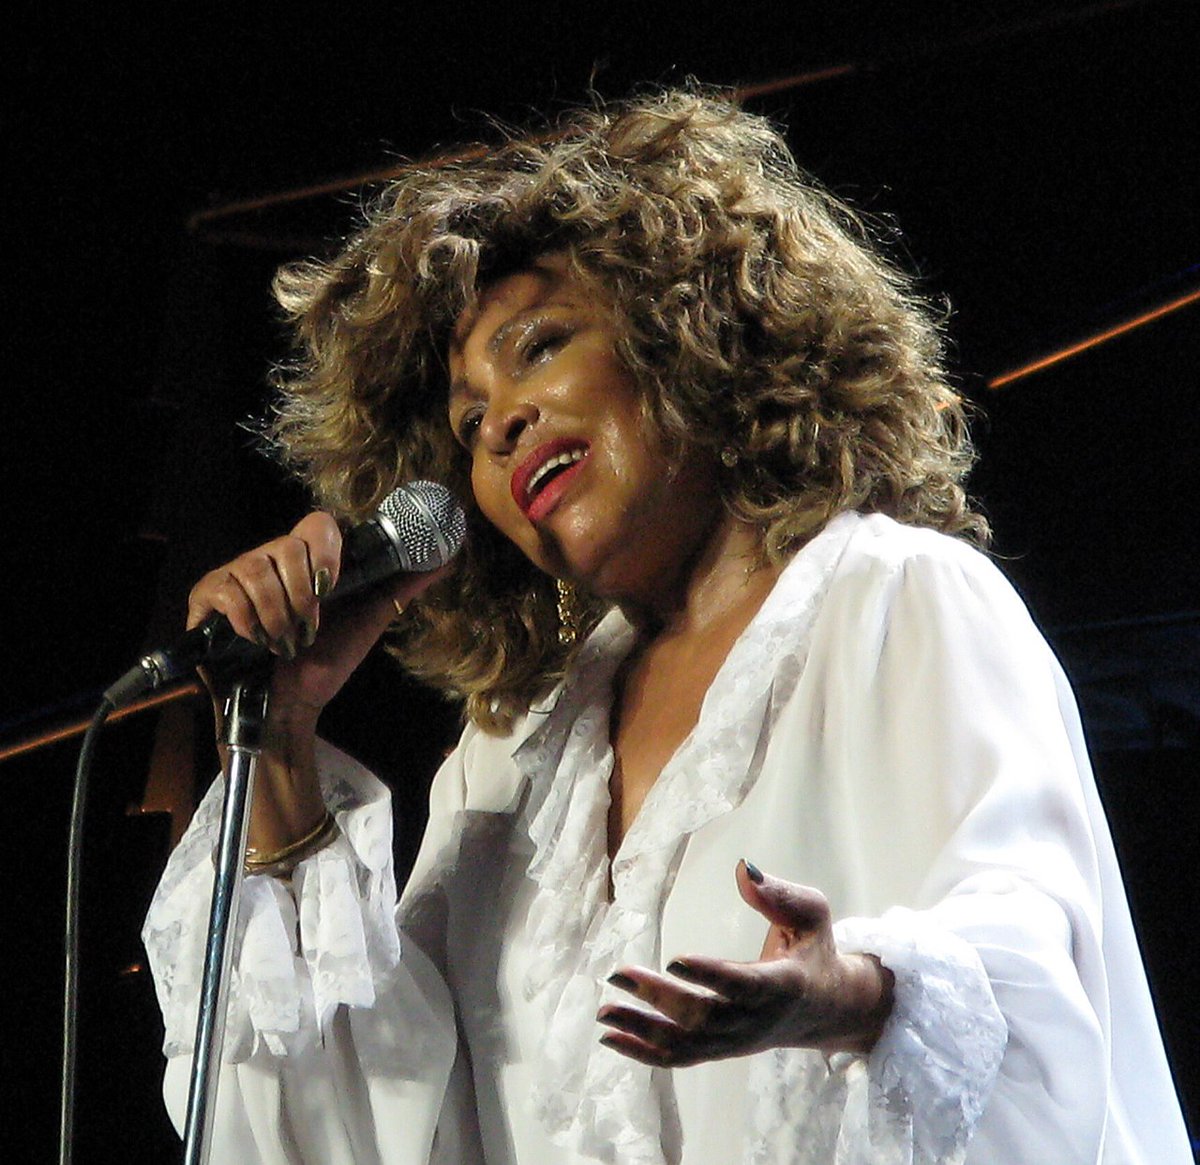 Redifinió las fronteras entre blues, soul y rock. Devoró los escenarios con su personalidad carismática. Fue la Reina Ácida. Dicen que cuando nadie cree en tí es cuando no puedes dejar de creer en tí mismo. Y eso hizo ella. Hoy, en #LaHistorietaMusical, Tina Turner.